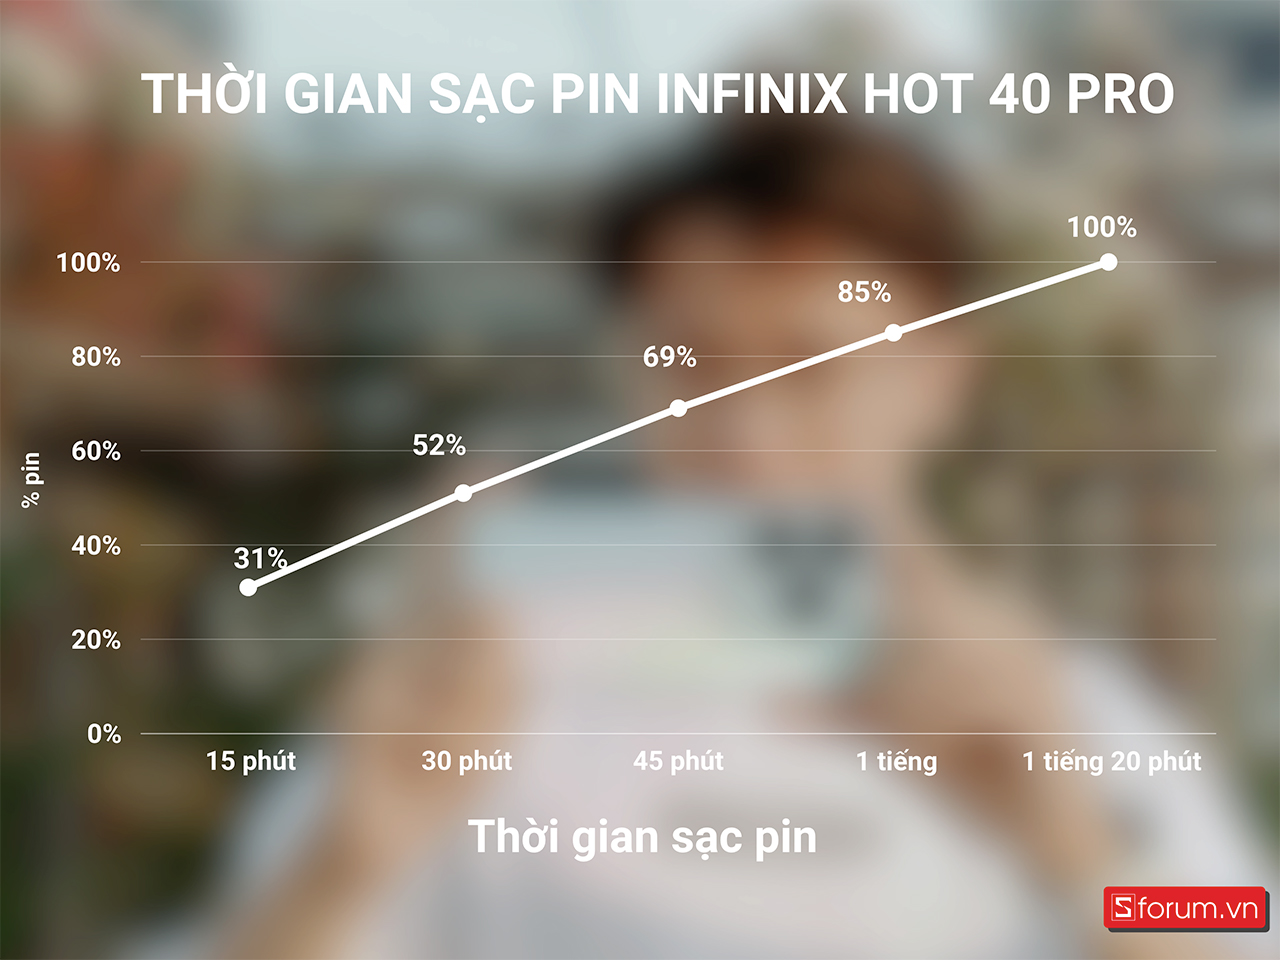 Thời gian sạc pin Infinix Hot 40 Pro